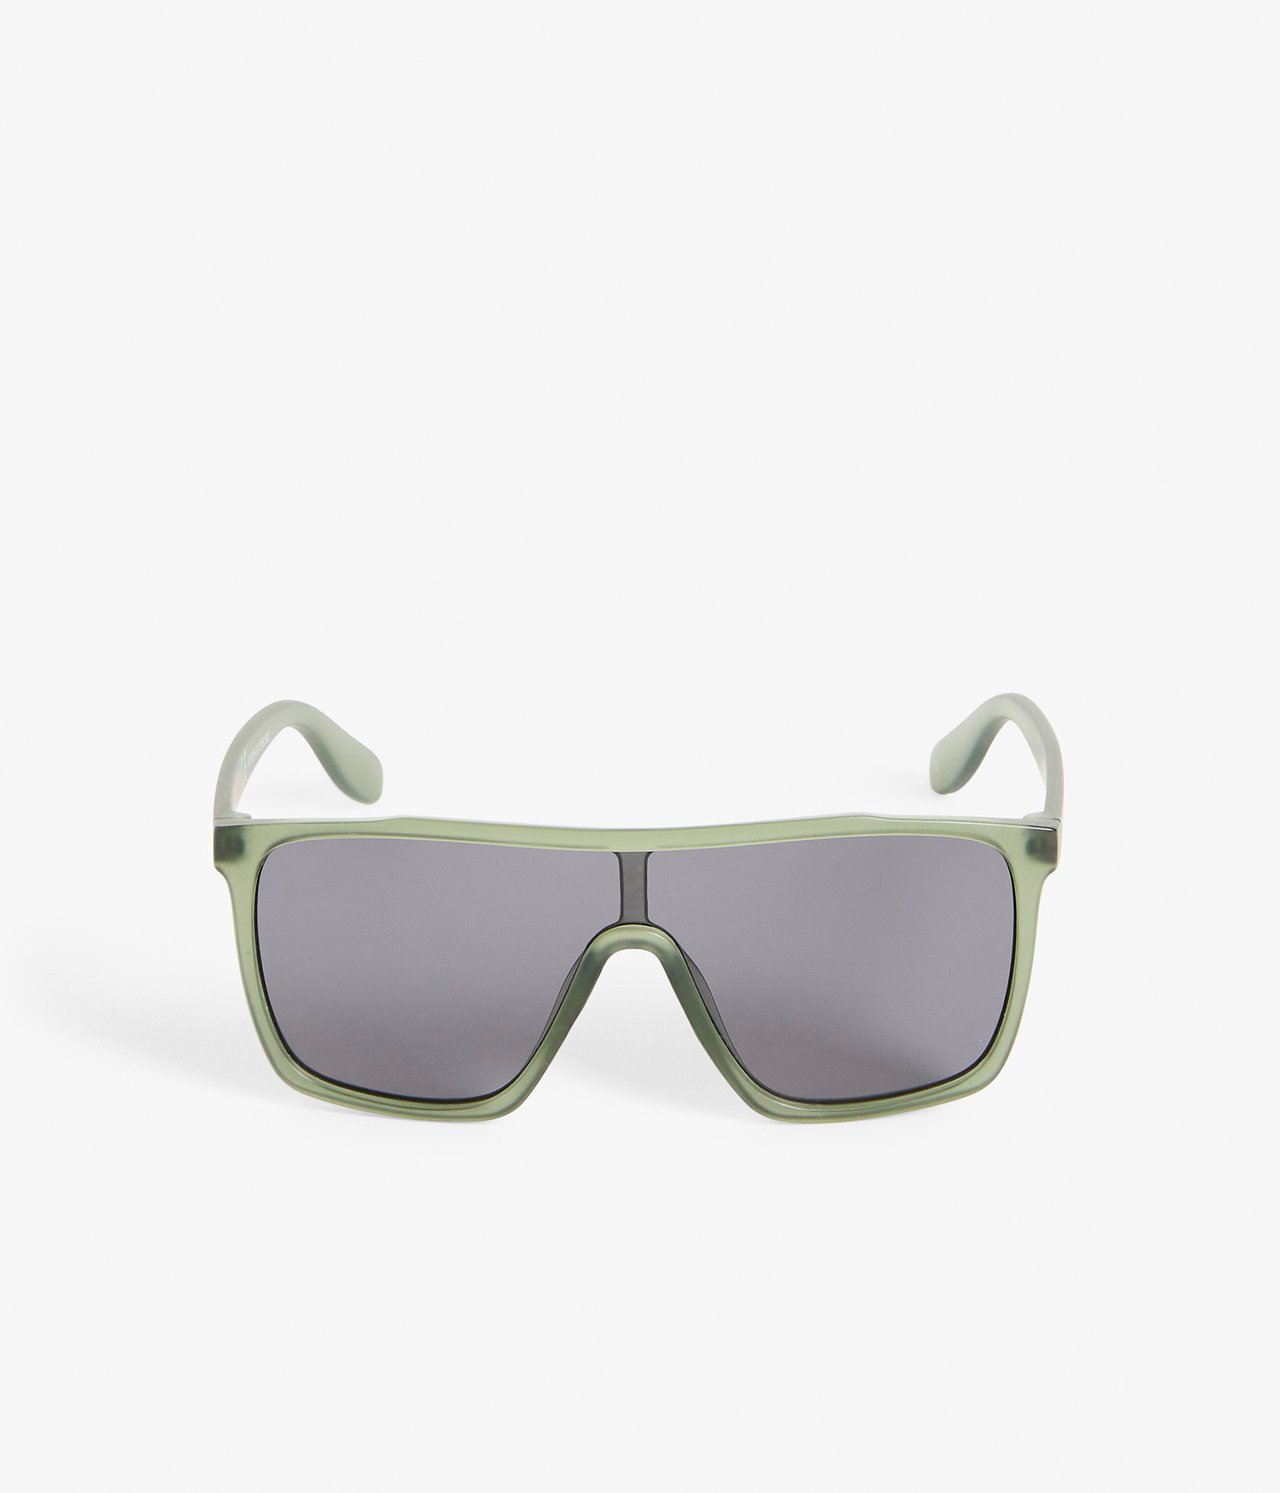 Solglasögon barn - Grön - 1